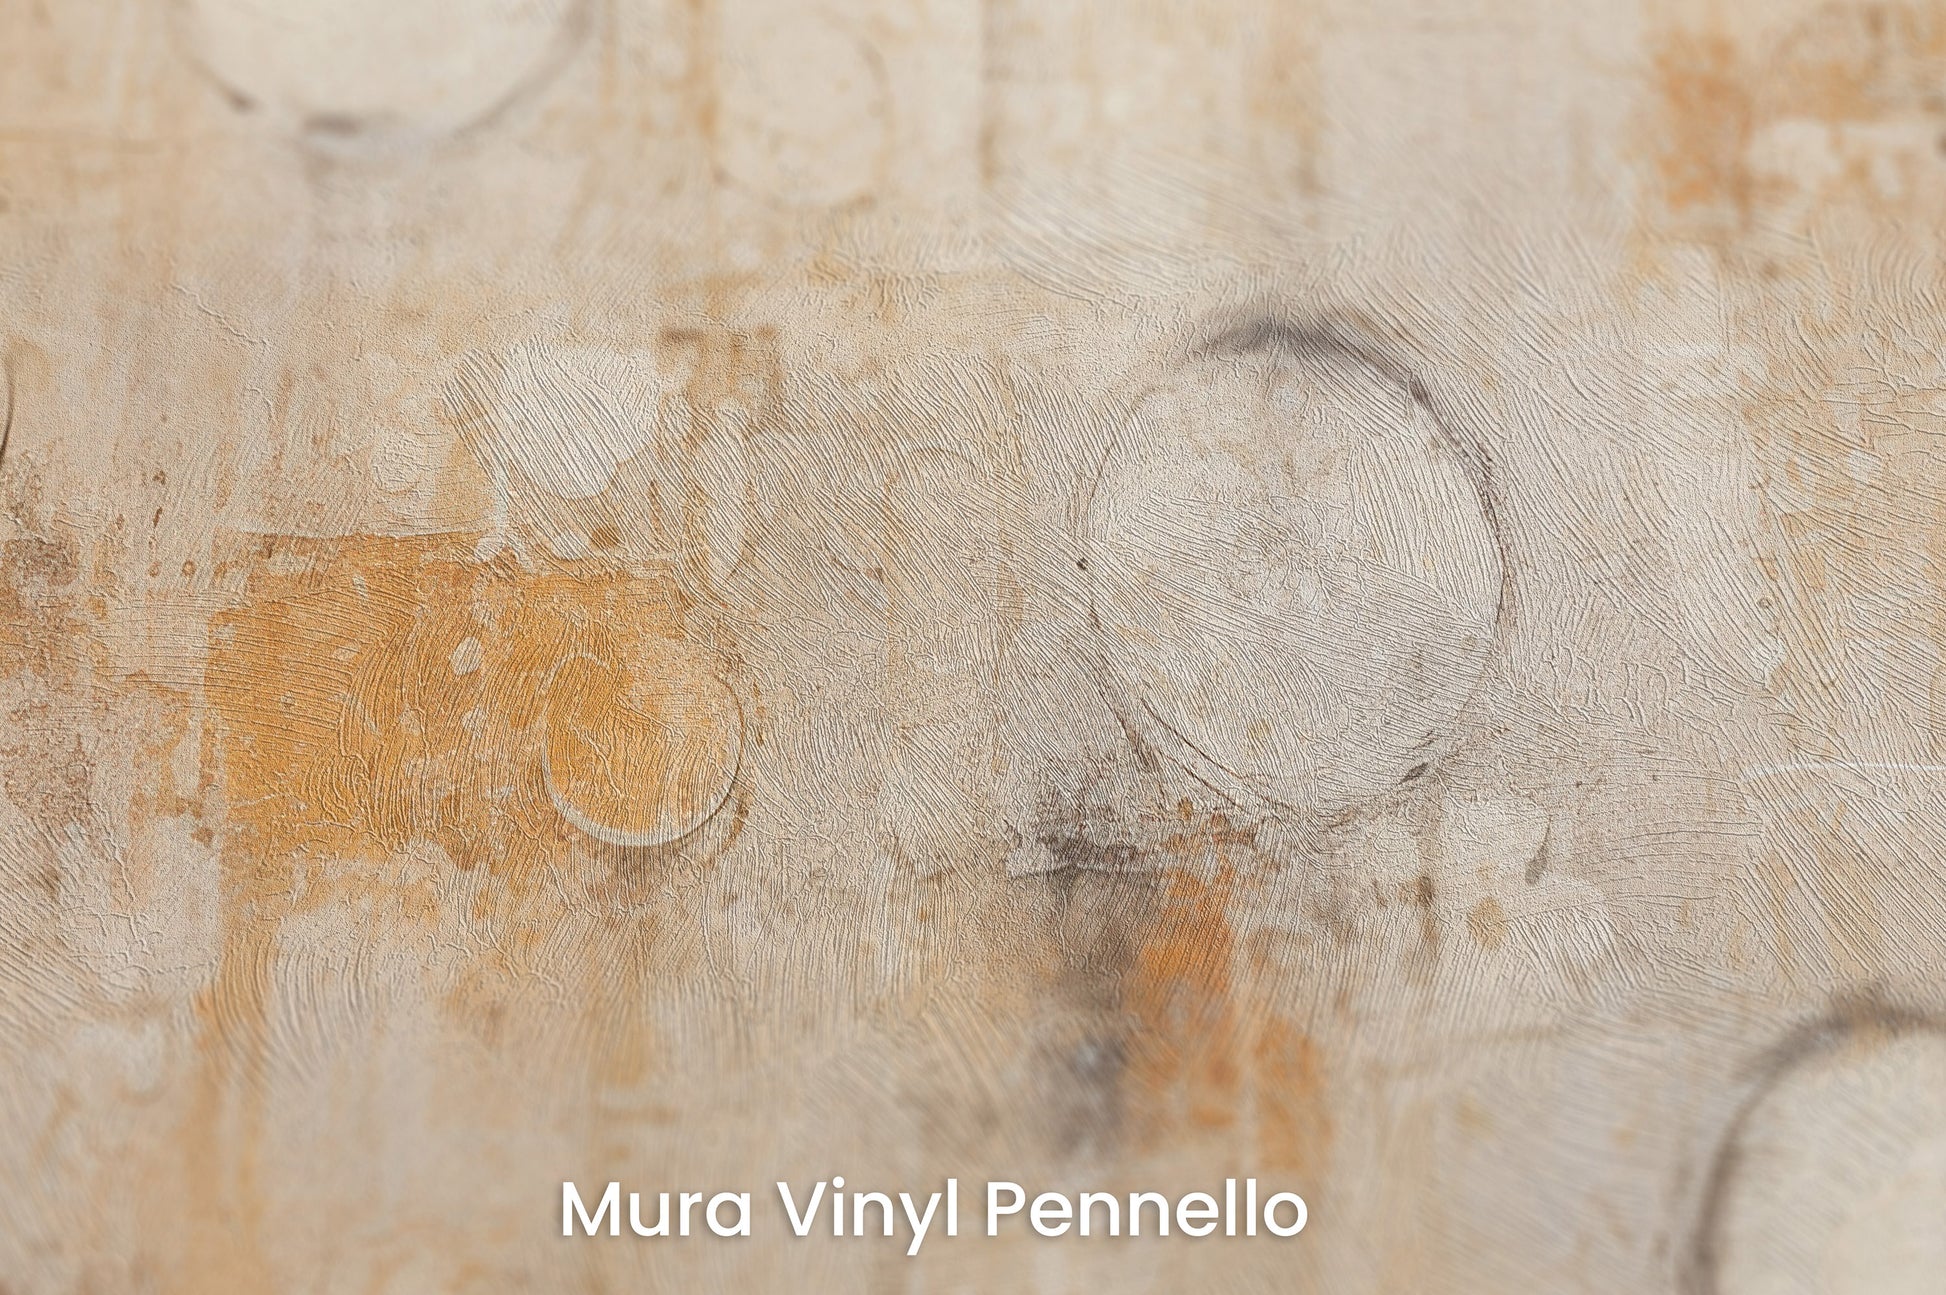 Zbliżenie na artystyczną fototapetę o nazwie RUSTIC ORBITAL IMPRESSIONS na podłożu Mura Vinyl Pennello - faktura pociągnięć pędzla malarskiego.